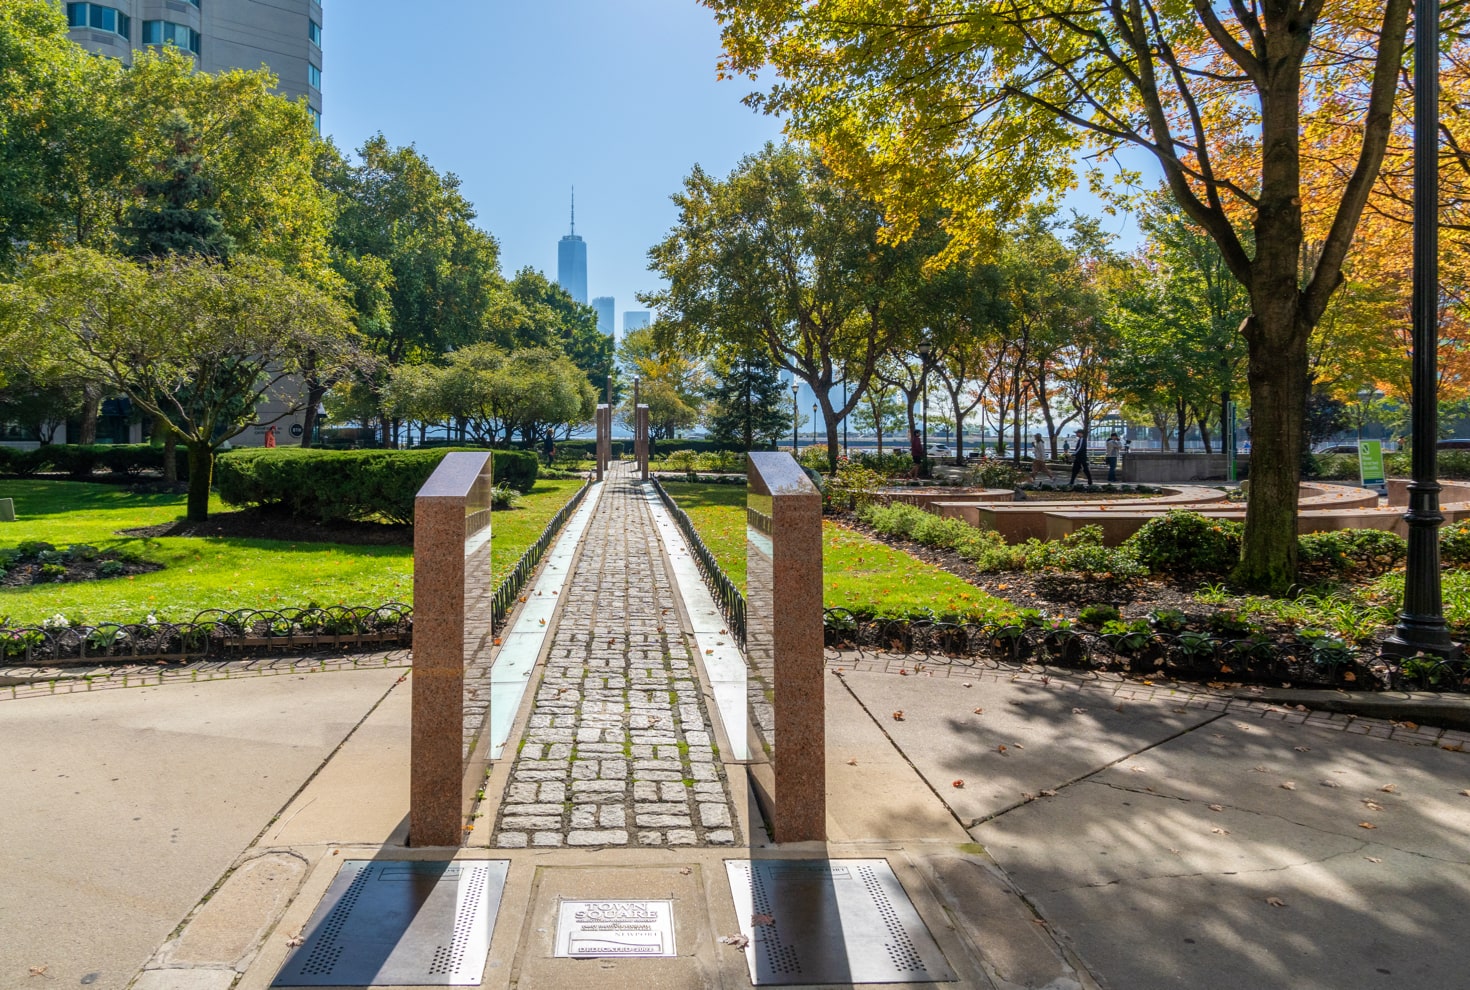 9/11 Memorial sculpture in Newport Jersey City